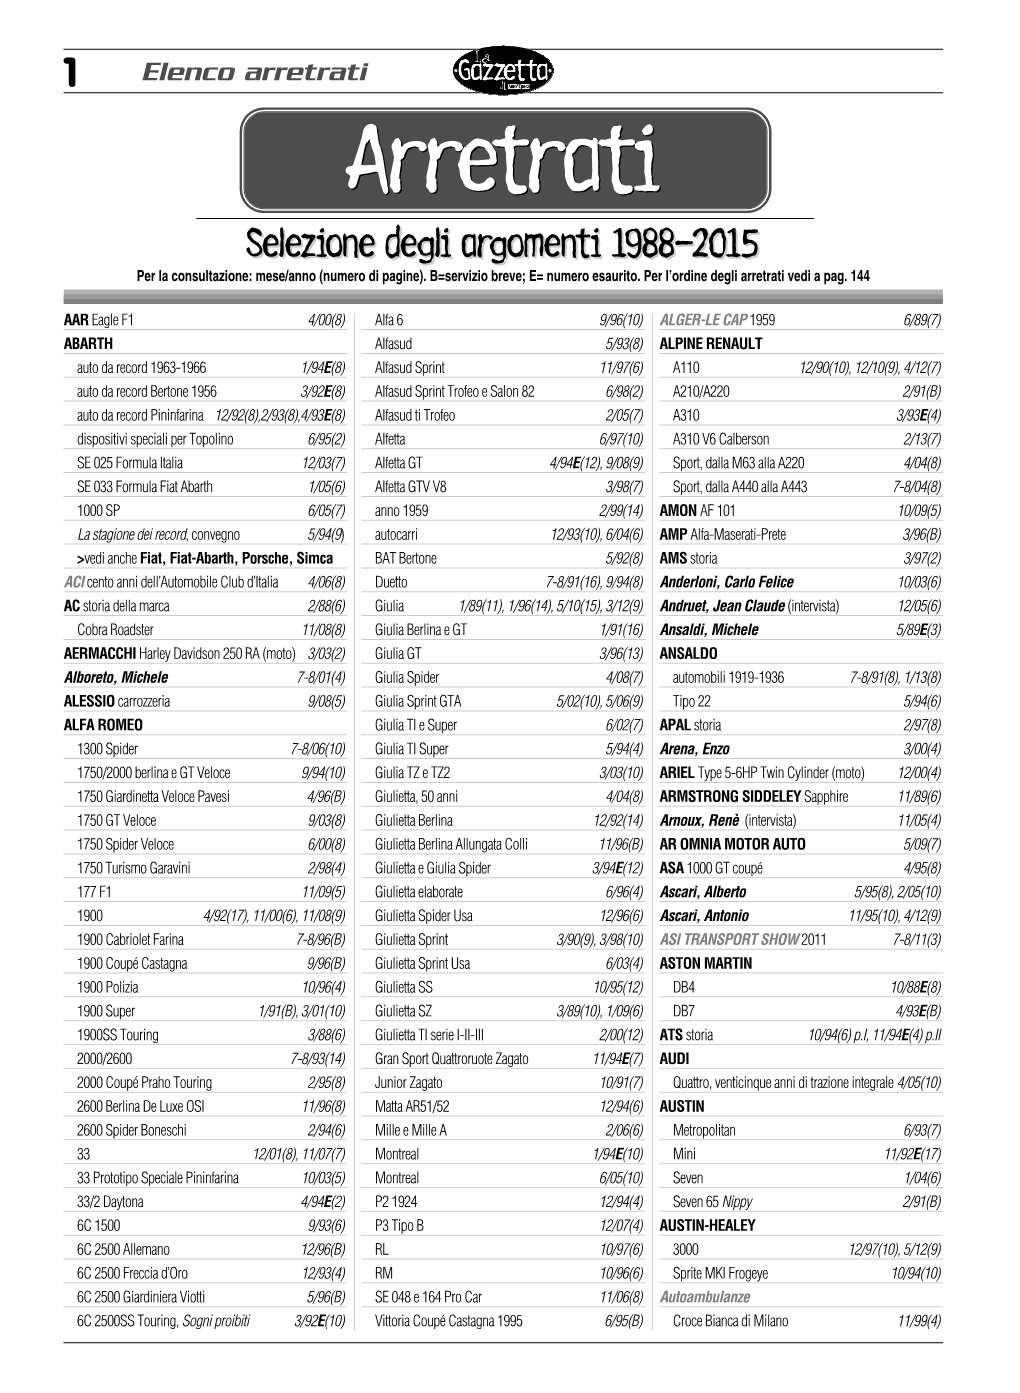 Elenco Arretrati Per Argomento: 1988-2015